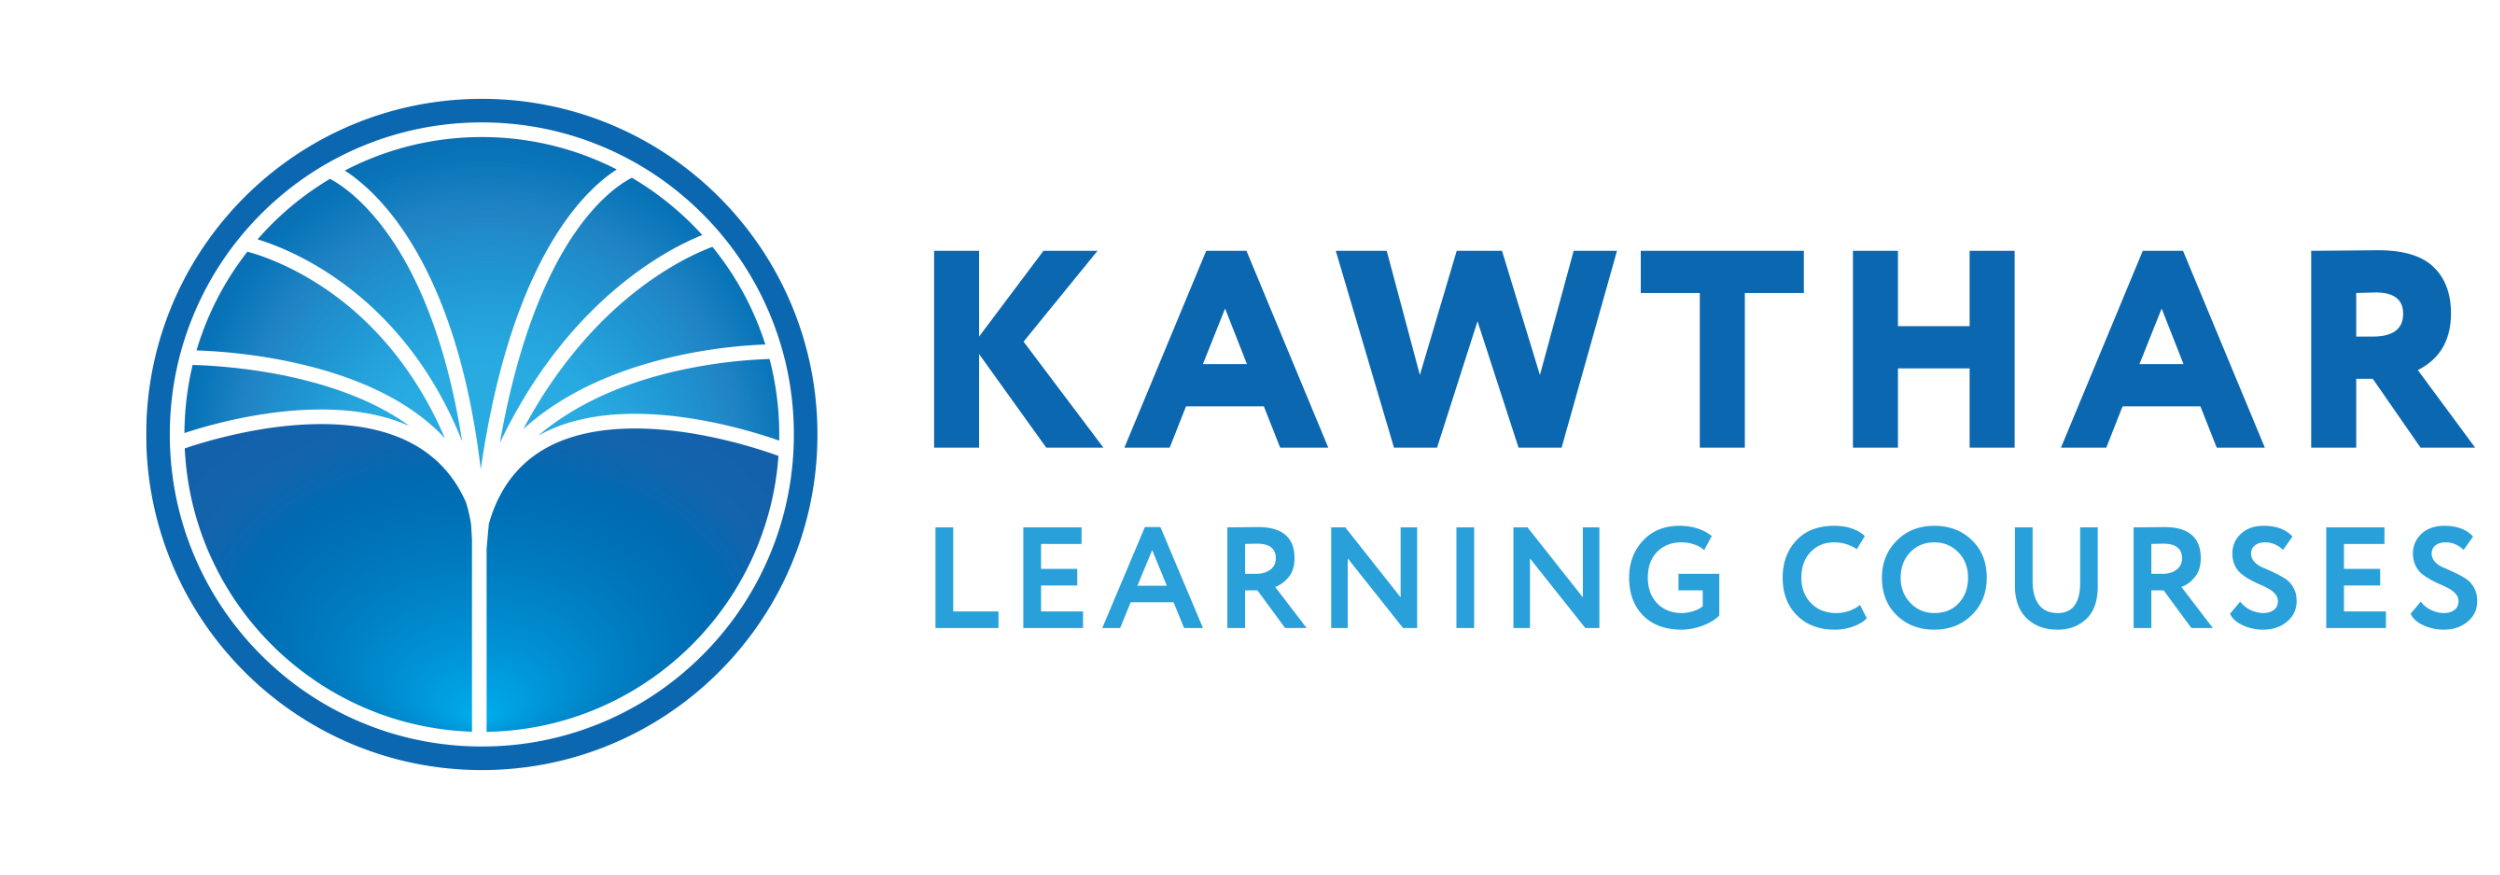 Kawthar Learning Courses